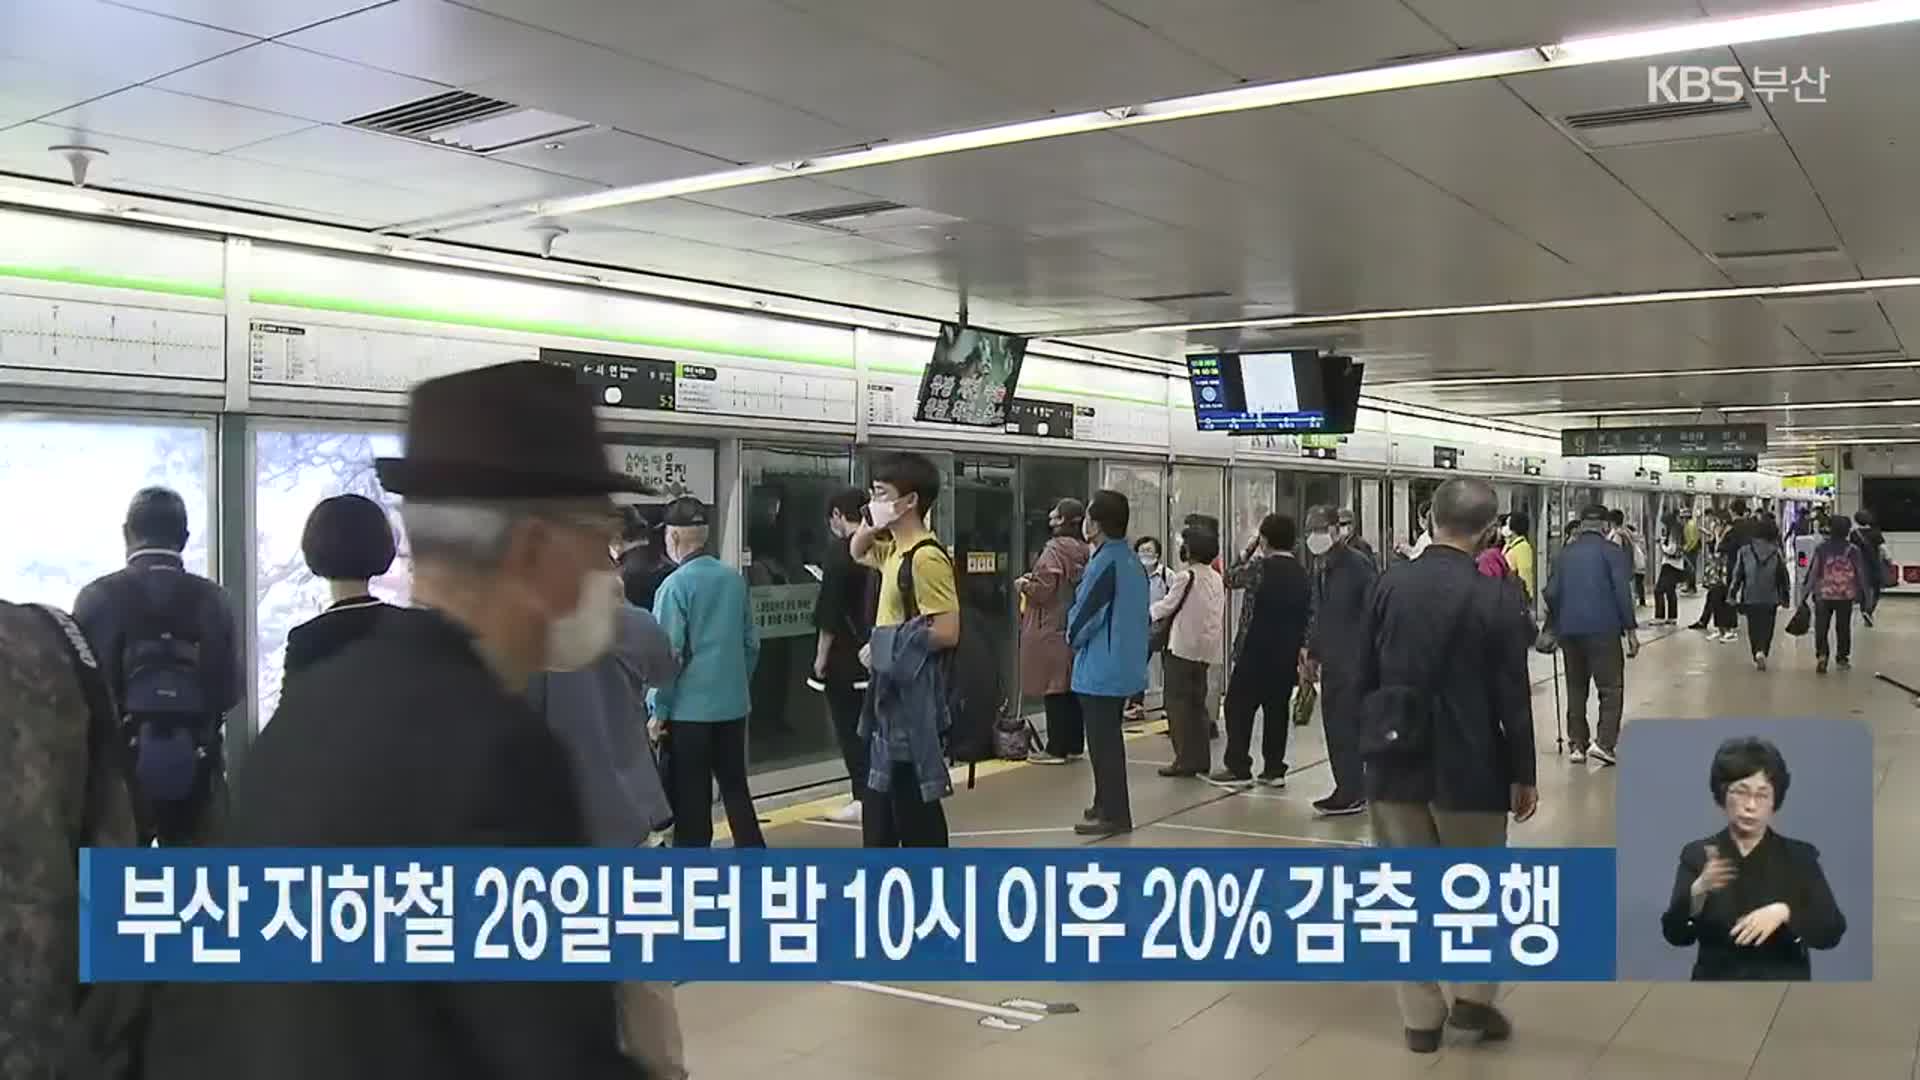 부산 지하철 26일부터 밤 10시 이후 20% 감축 운행 